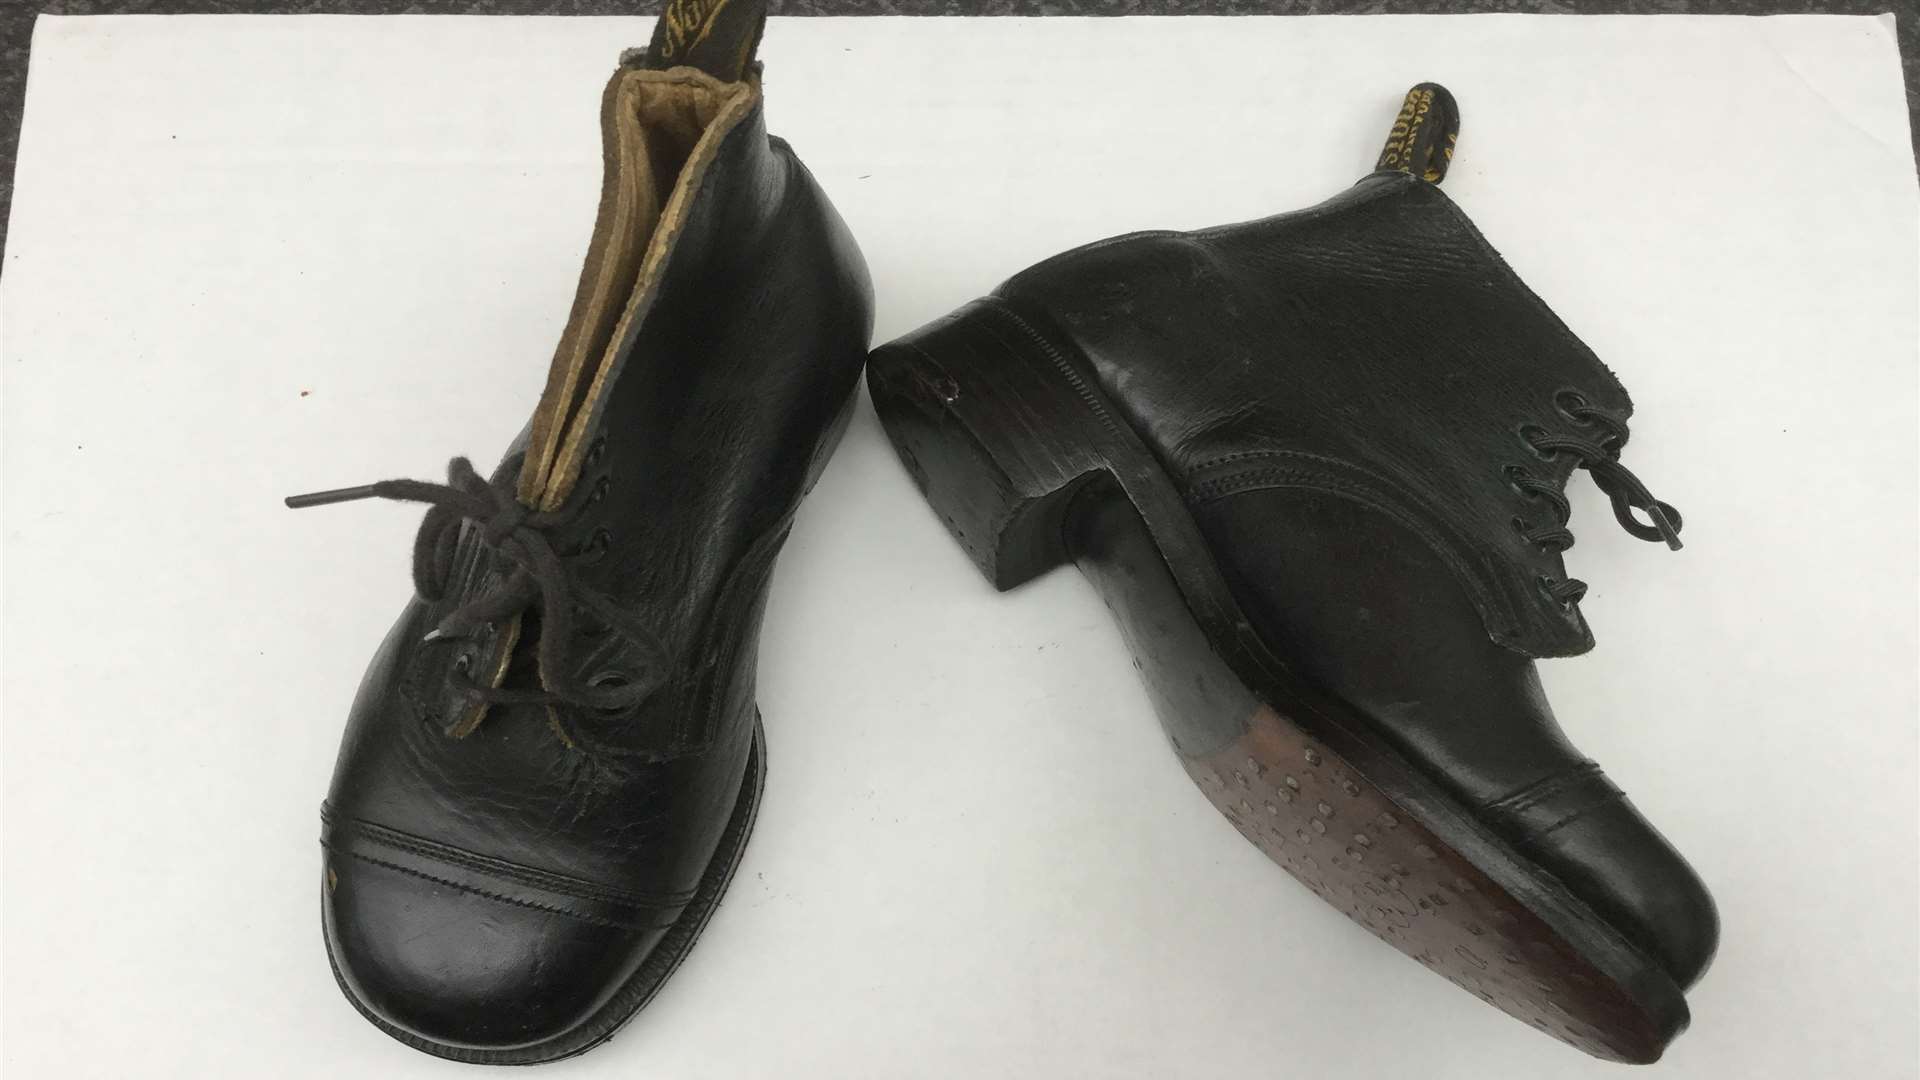 Derek Shaw's old market boots